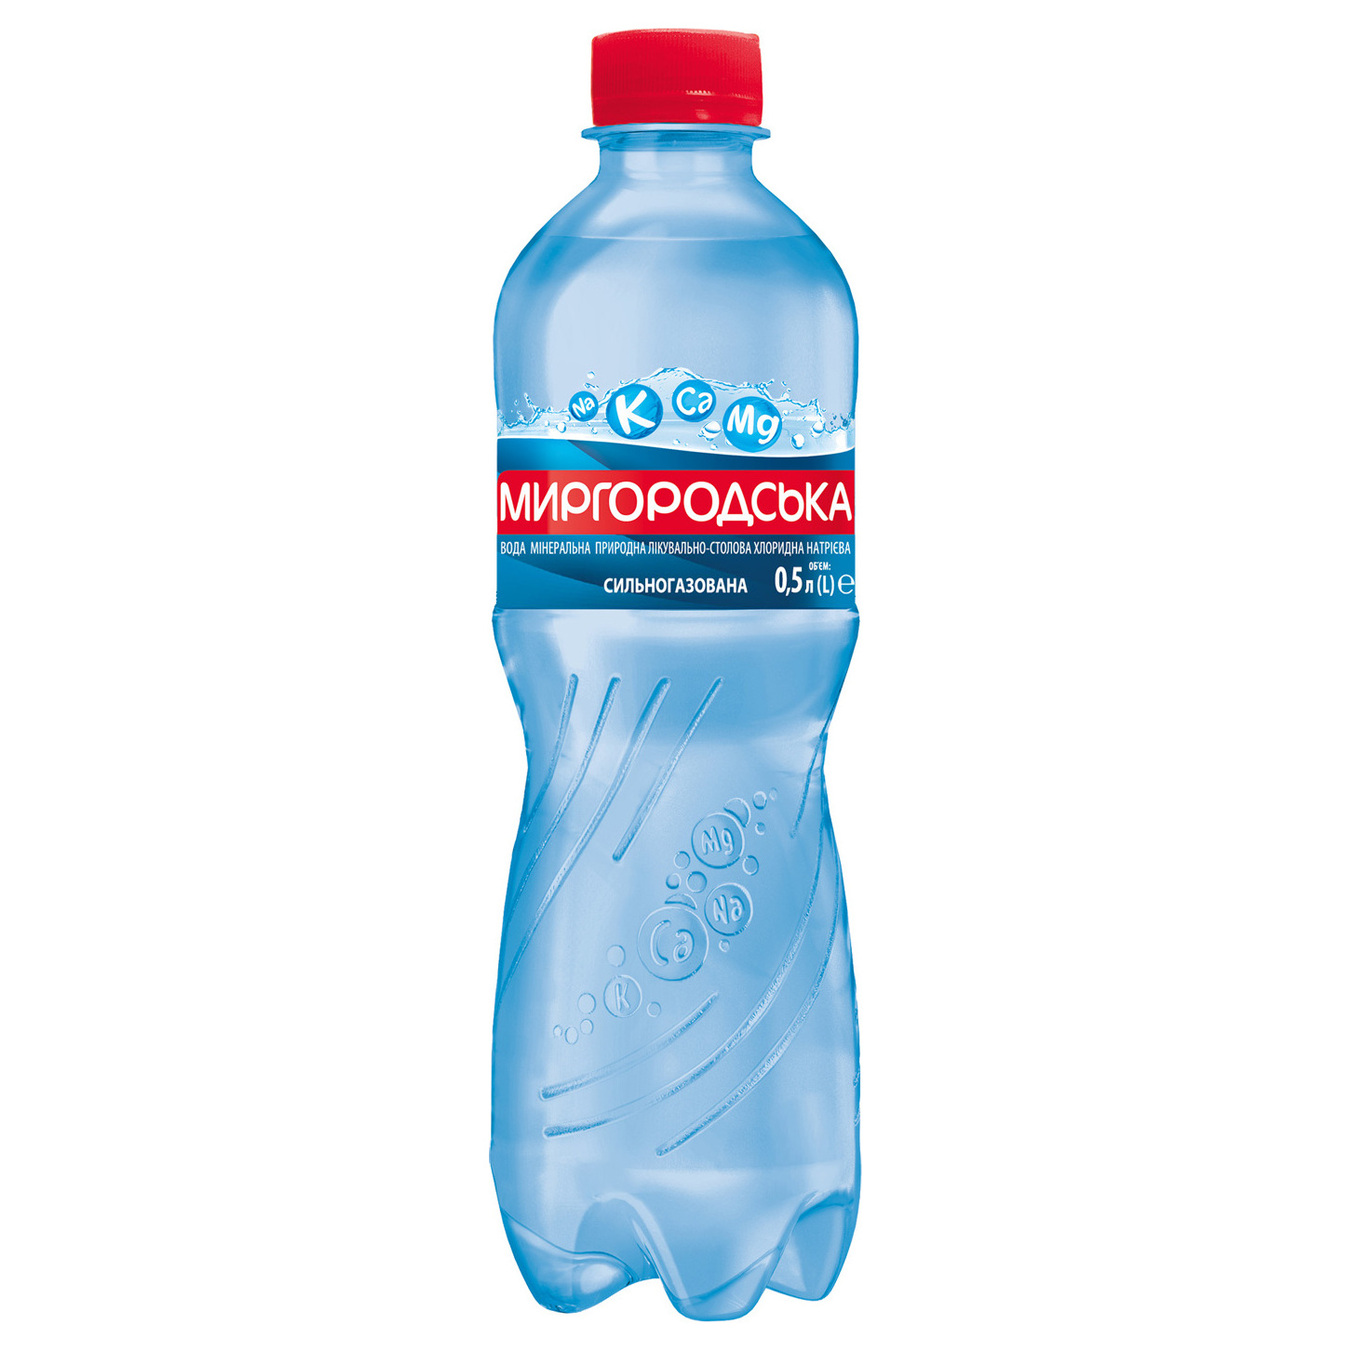 Вода минеральная Миргородська сильногазована 0,5л